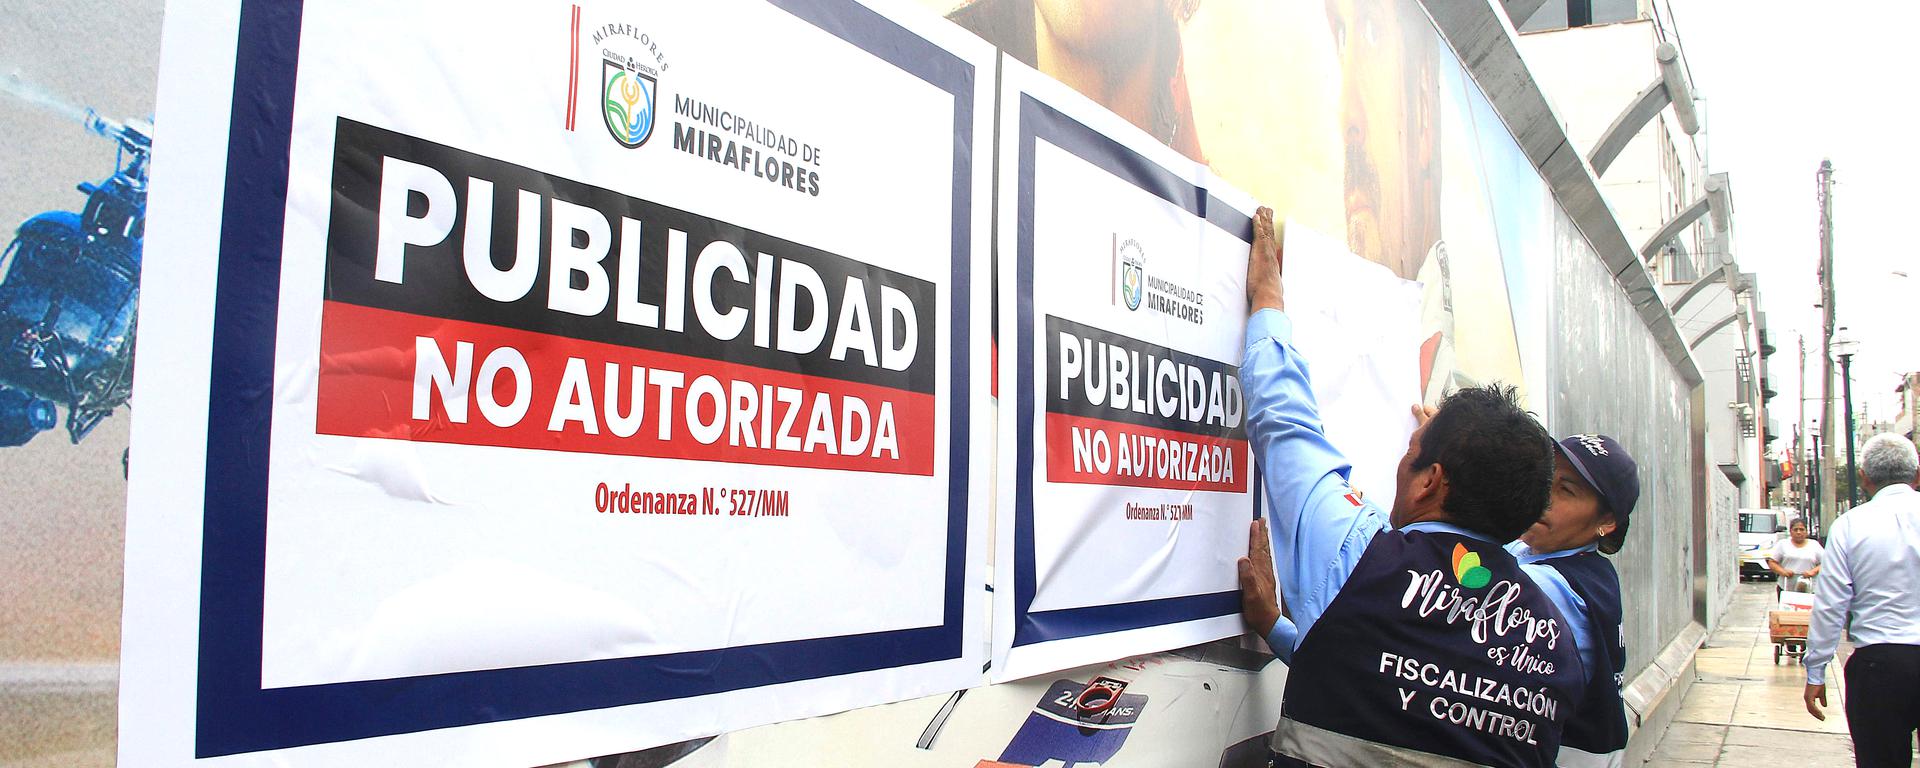 Publicidad informal en Miraflores será sancionada con hasta 100 UIT’s: dónde están ubicados los 38 avisos detectados por la municipalidad